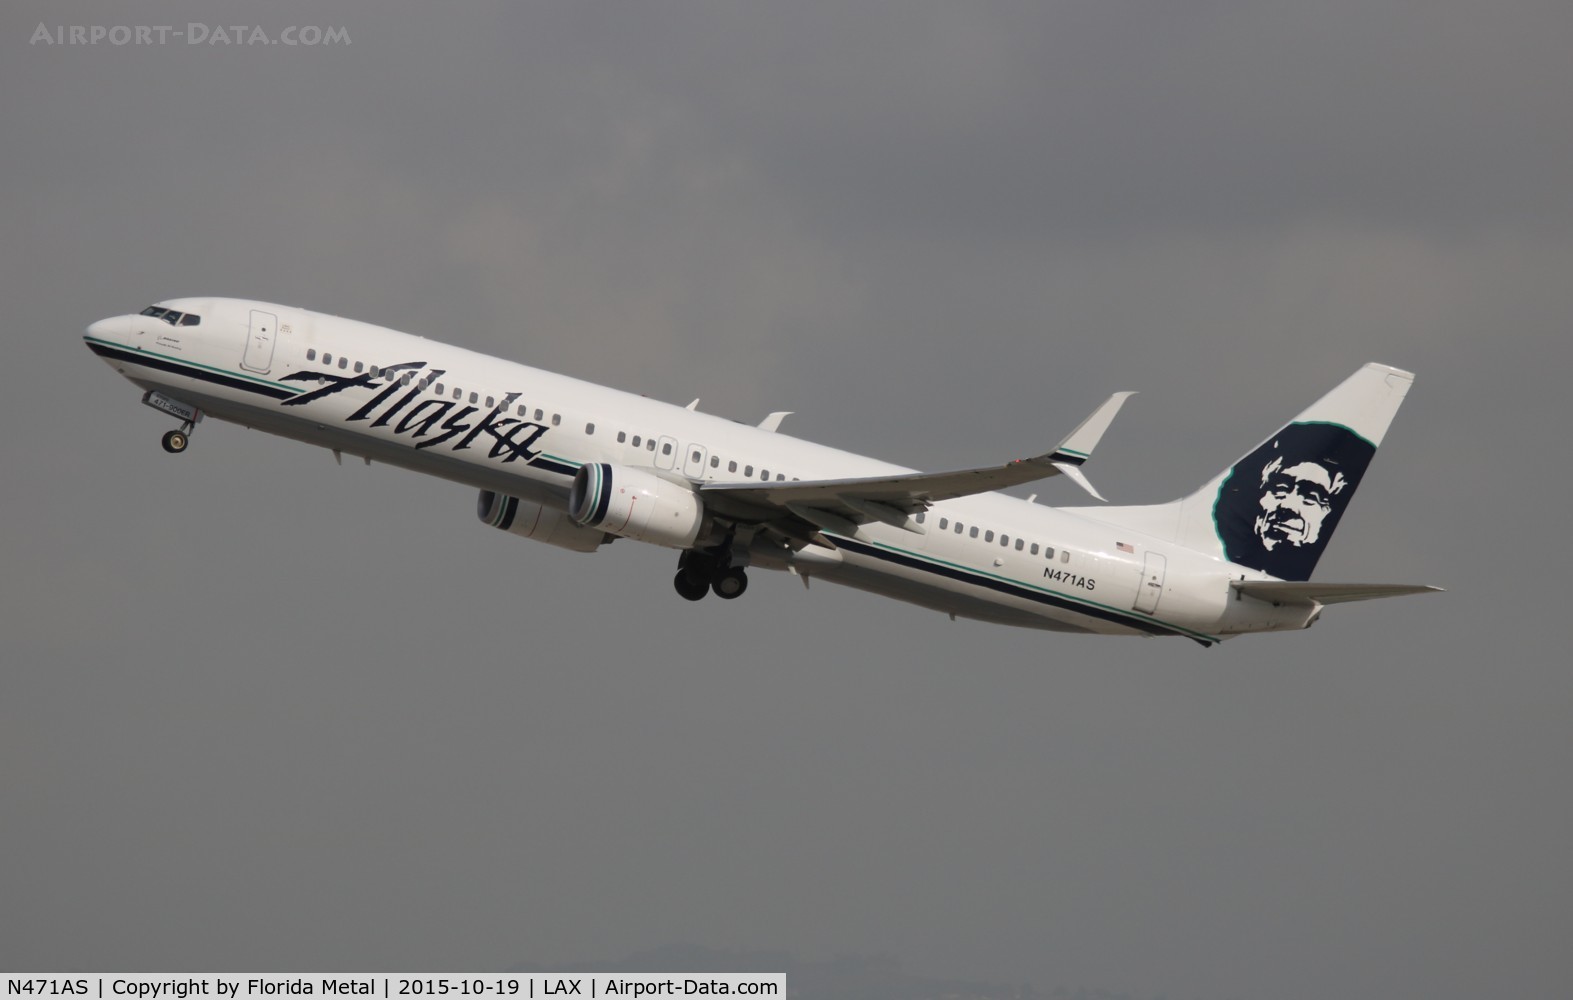 N471AS, 2014 Boeing 737-990/ER C/N 41703, Alaska